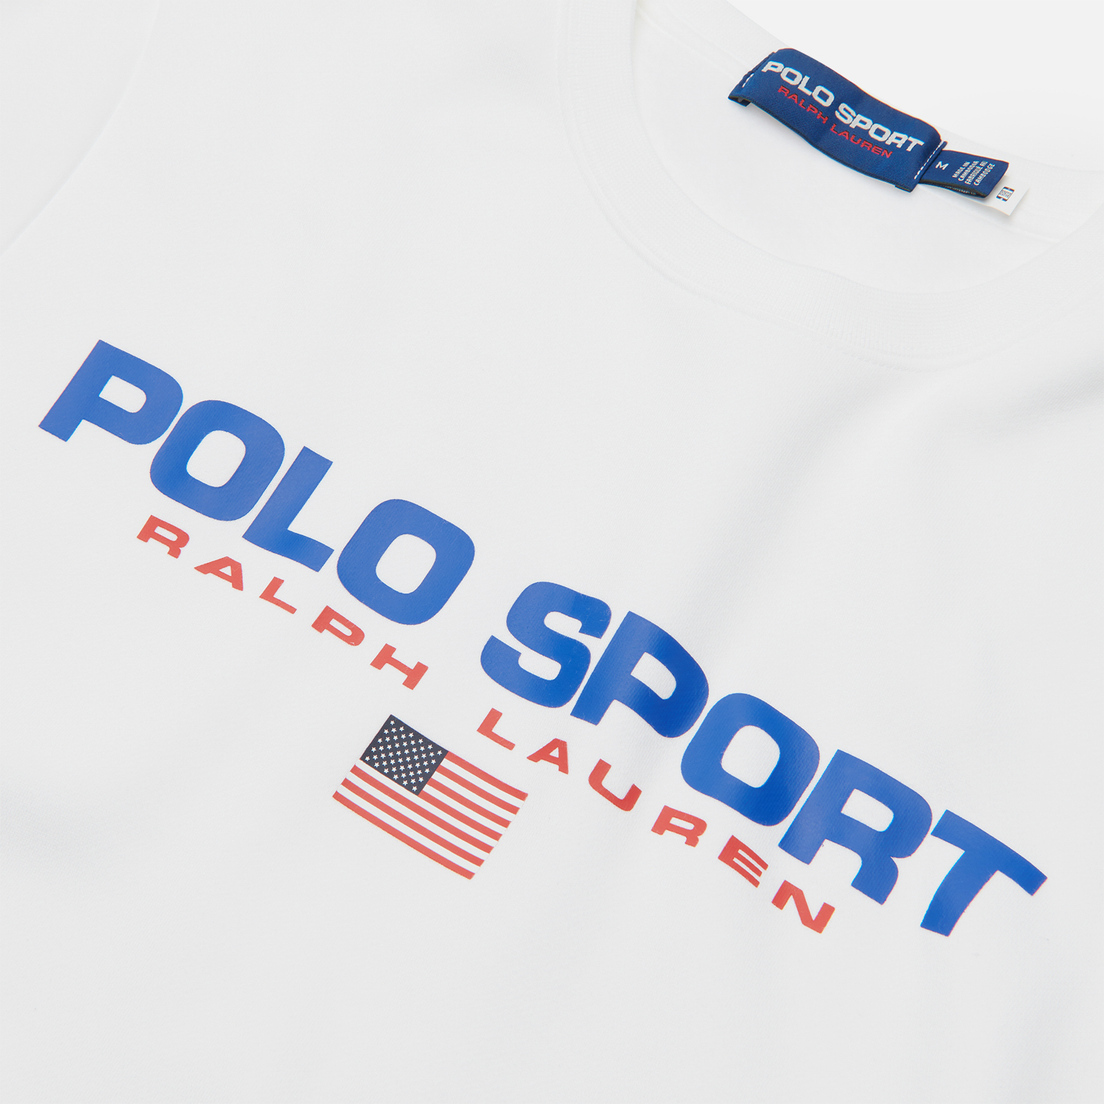 Polo Ralph Lauren Мужская толстовка Polo Sport Fleece Crew Neck